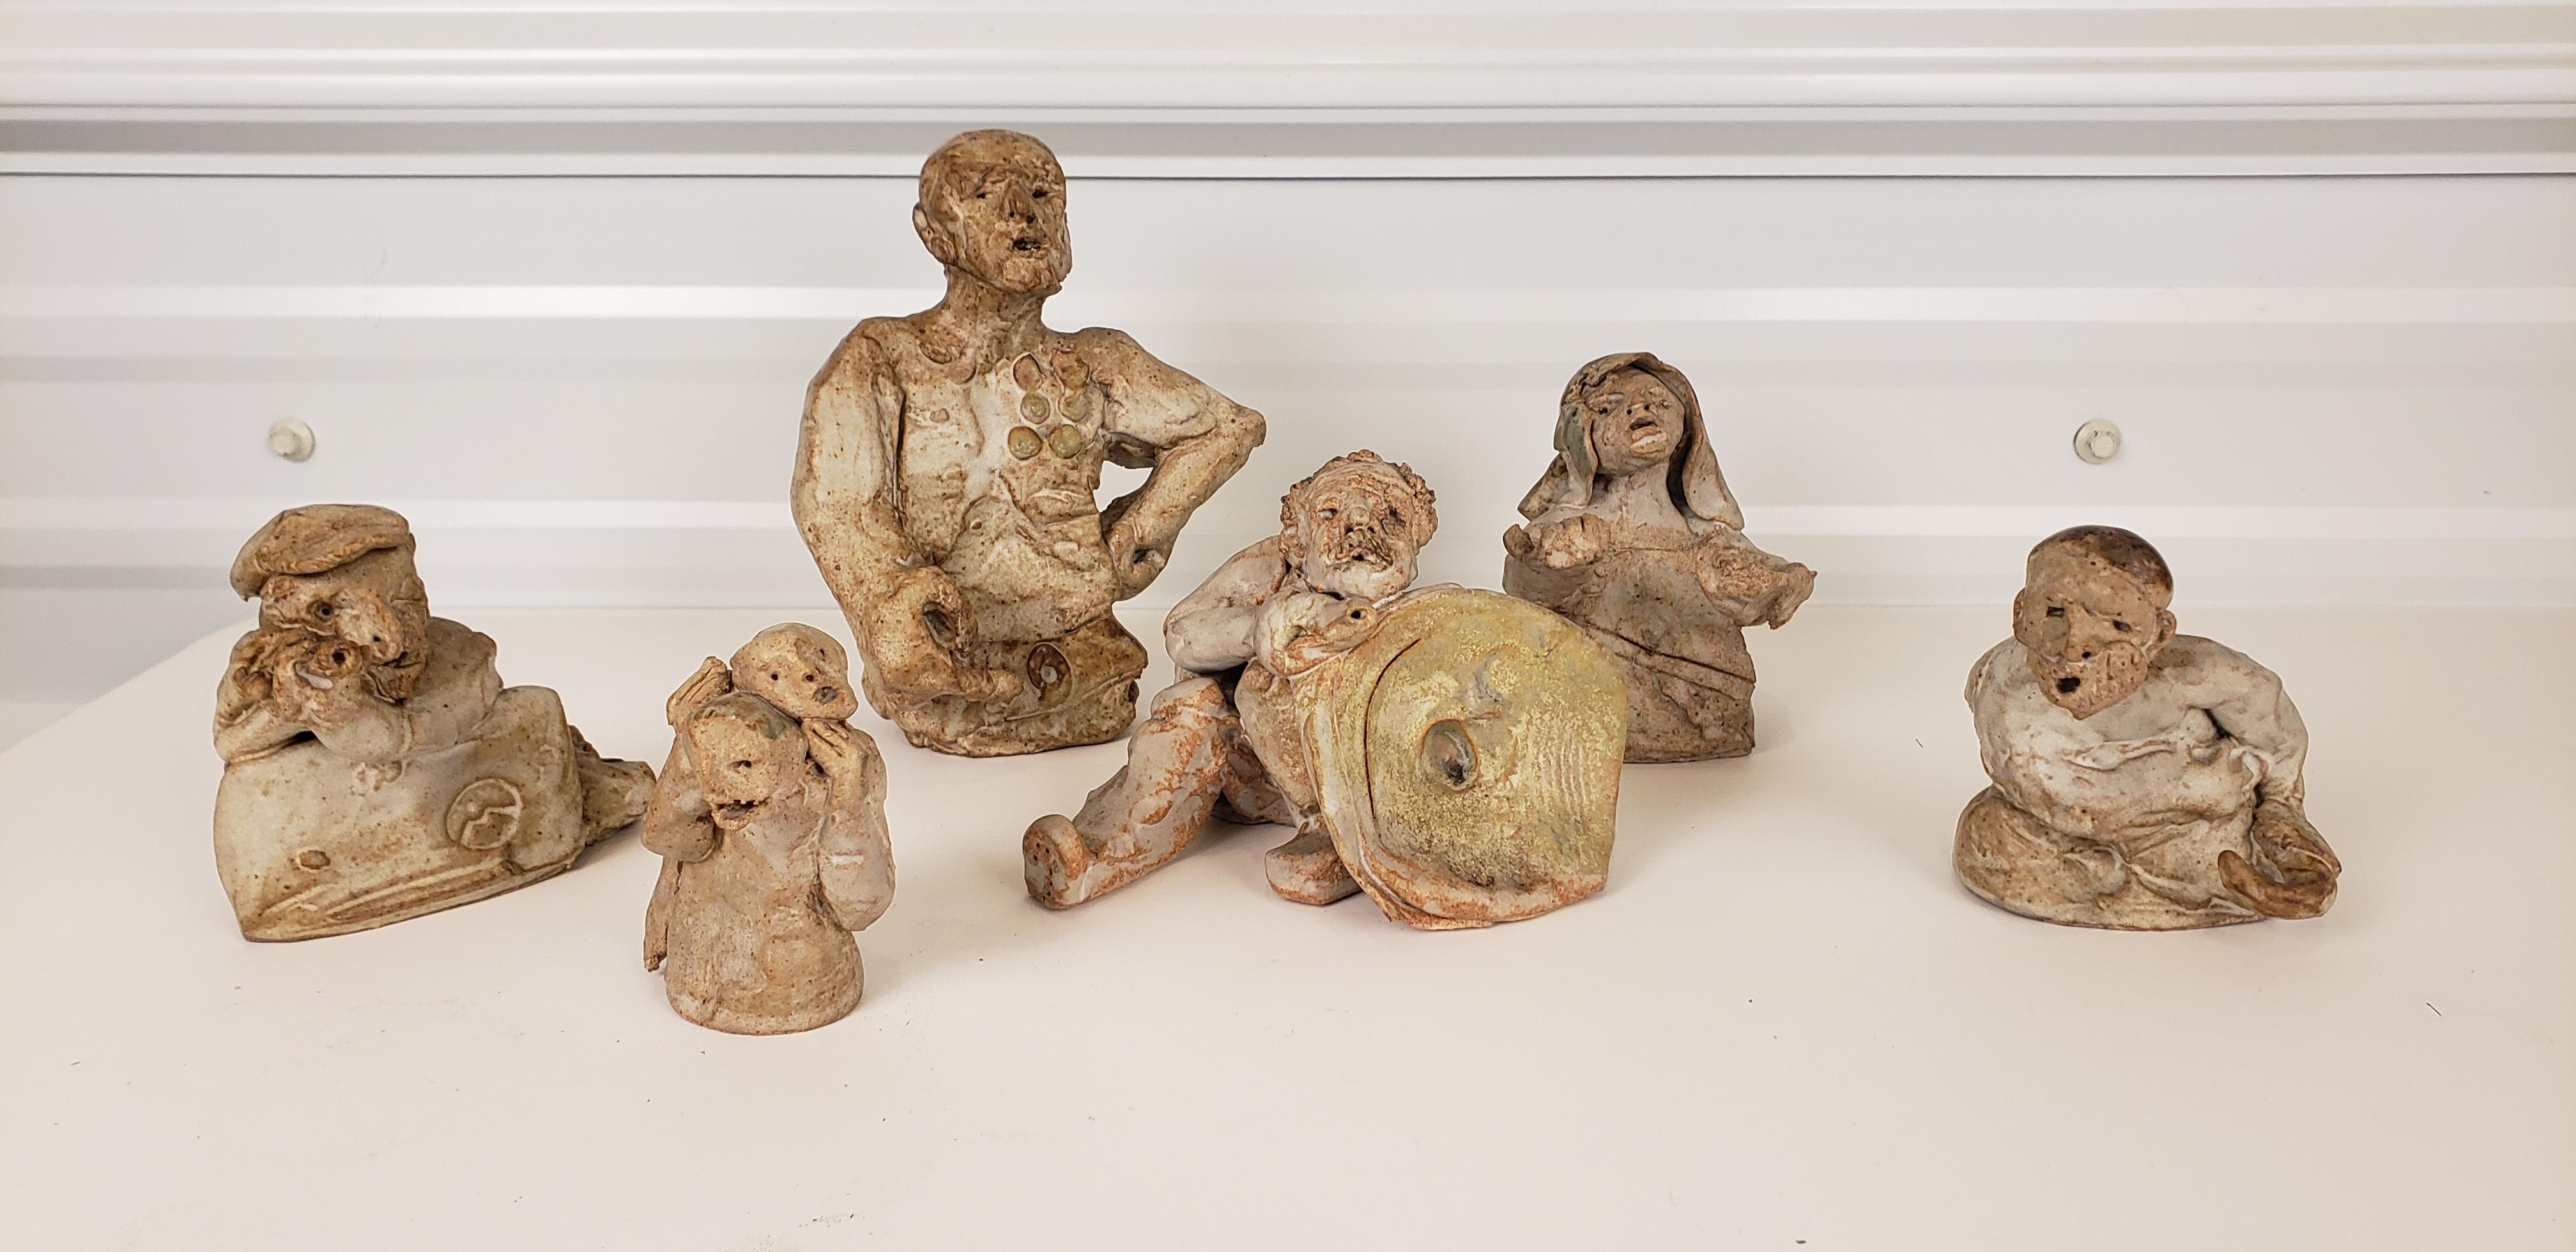 Merveilleux ensemble de sculptures de l'artiste italo-américain Marco MarCo.
 Créé autour de l'année 70, ce groupe de personnages très animés ne peut qu'évoquer les contes. Parfait pour la décoration d'une table. Ces petits personnages varient en